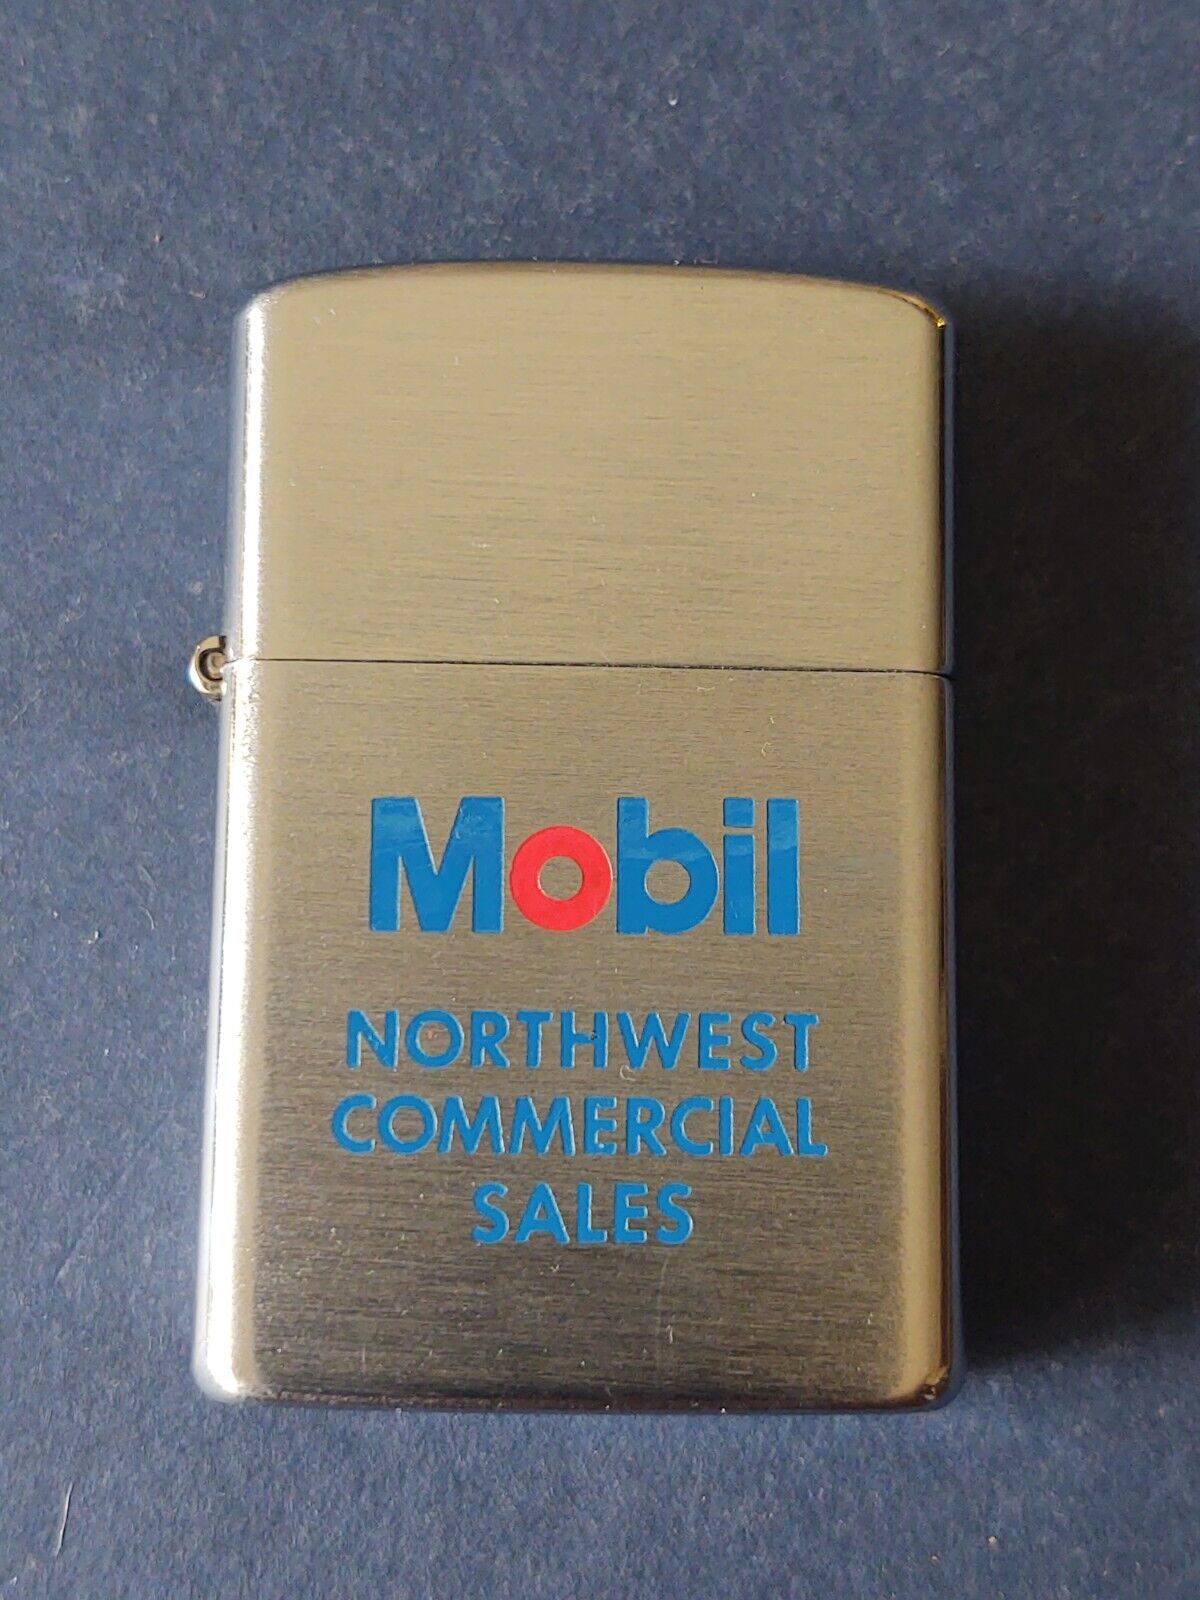 Vintage Mobil Oil Promo Advertising Lighter, Northwest Commercial Sales NIB NOS